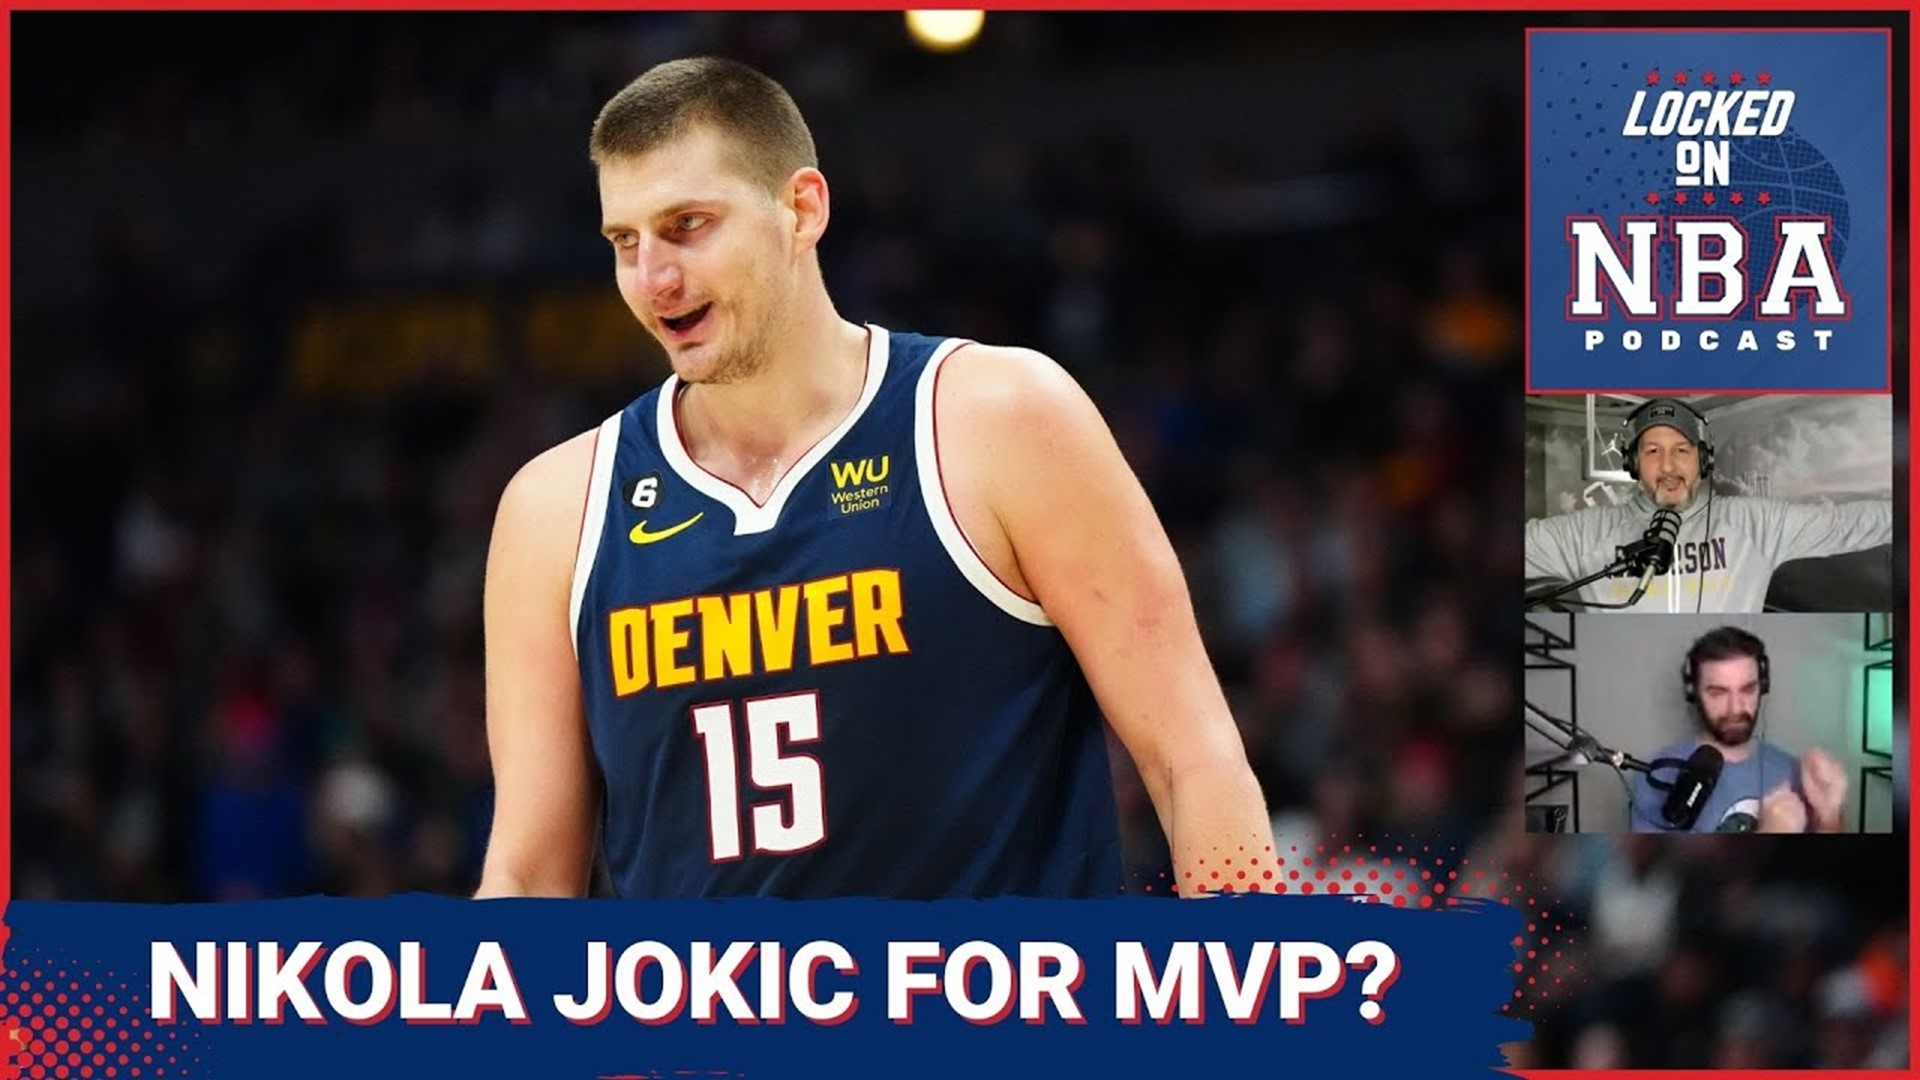 Nikola Jokic running away with MVP? | Should the Toronto Raptors blow it up?